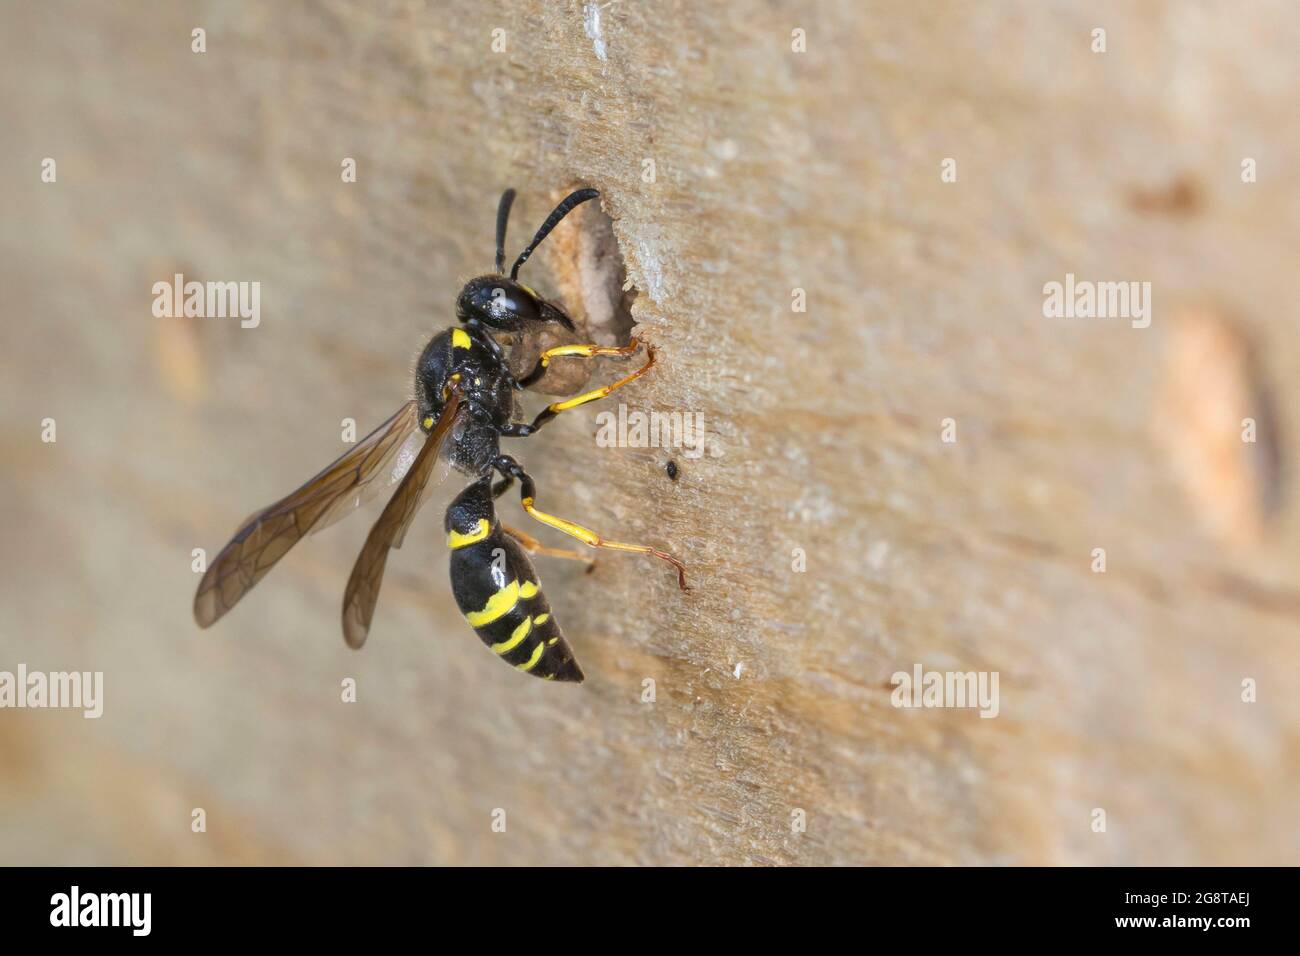 Nido di vespe vasaio immagini e fotografie stock ad alta risoluzione - Alamy